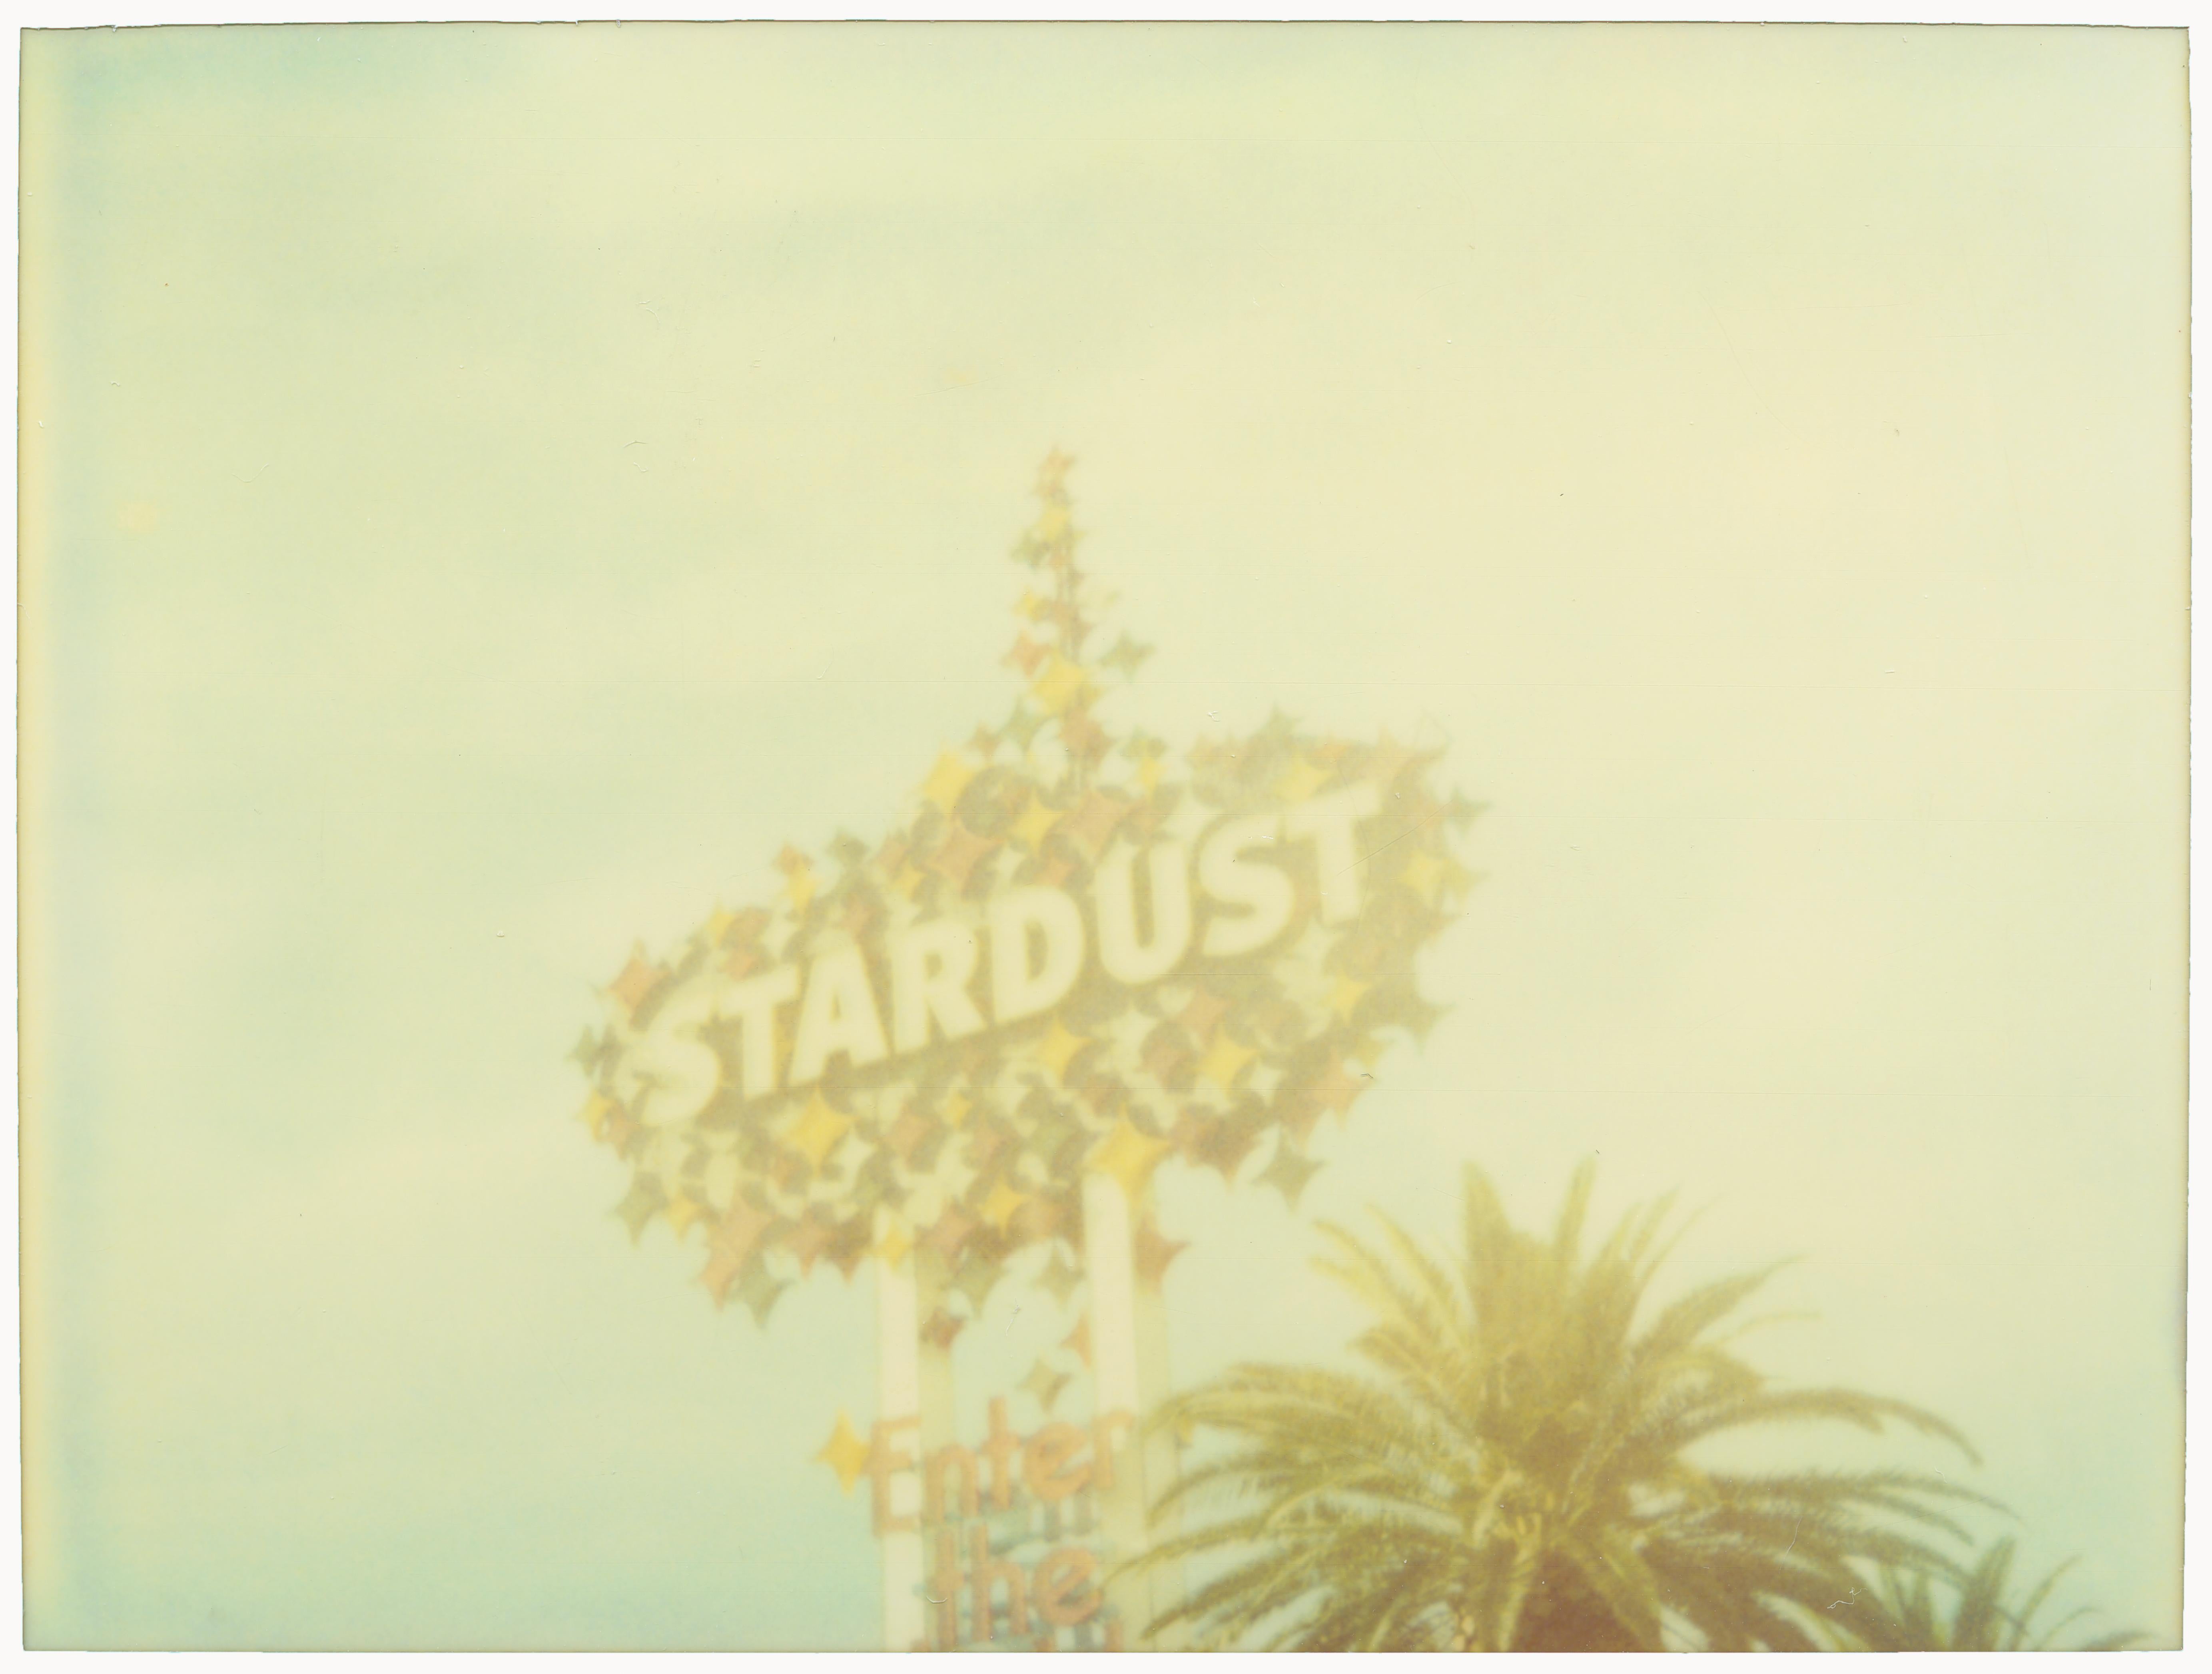 Stardust (Vegas)